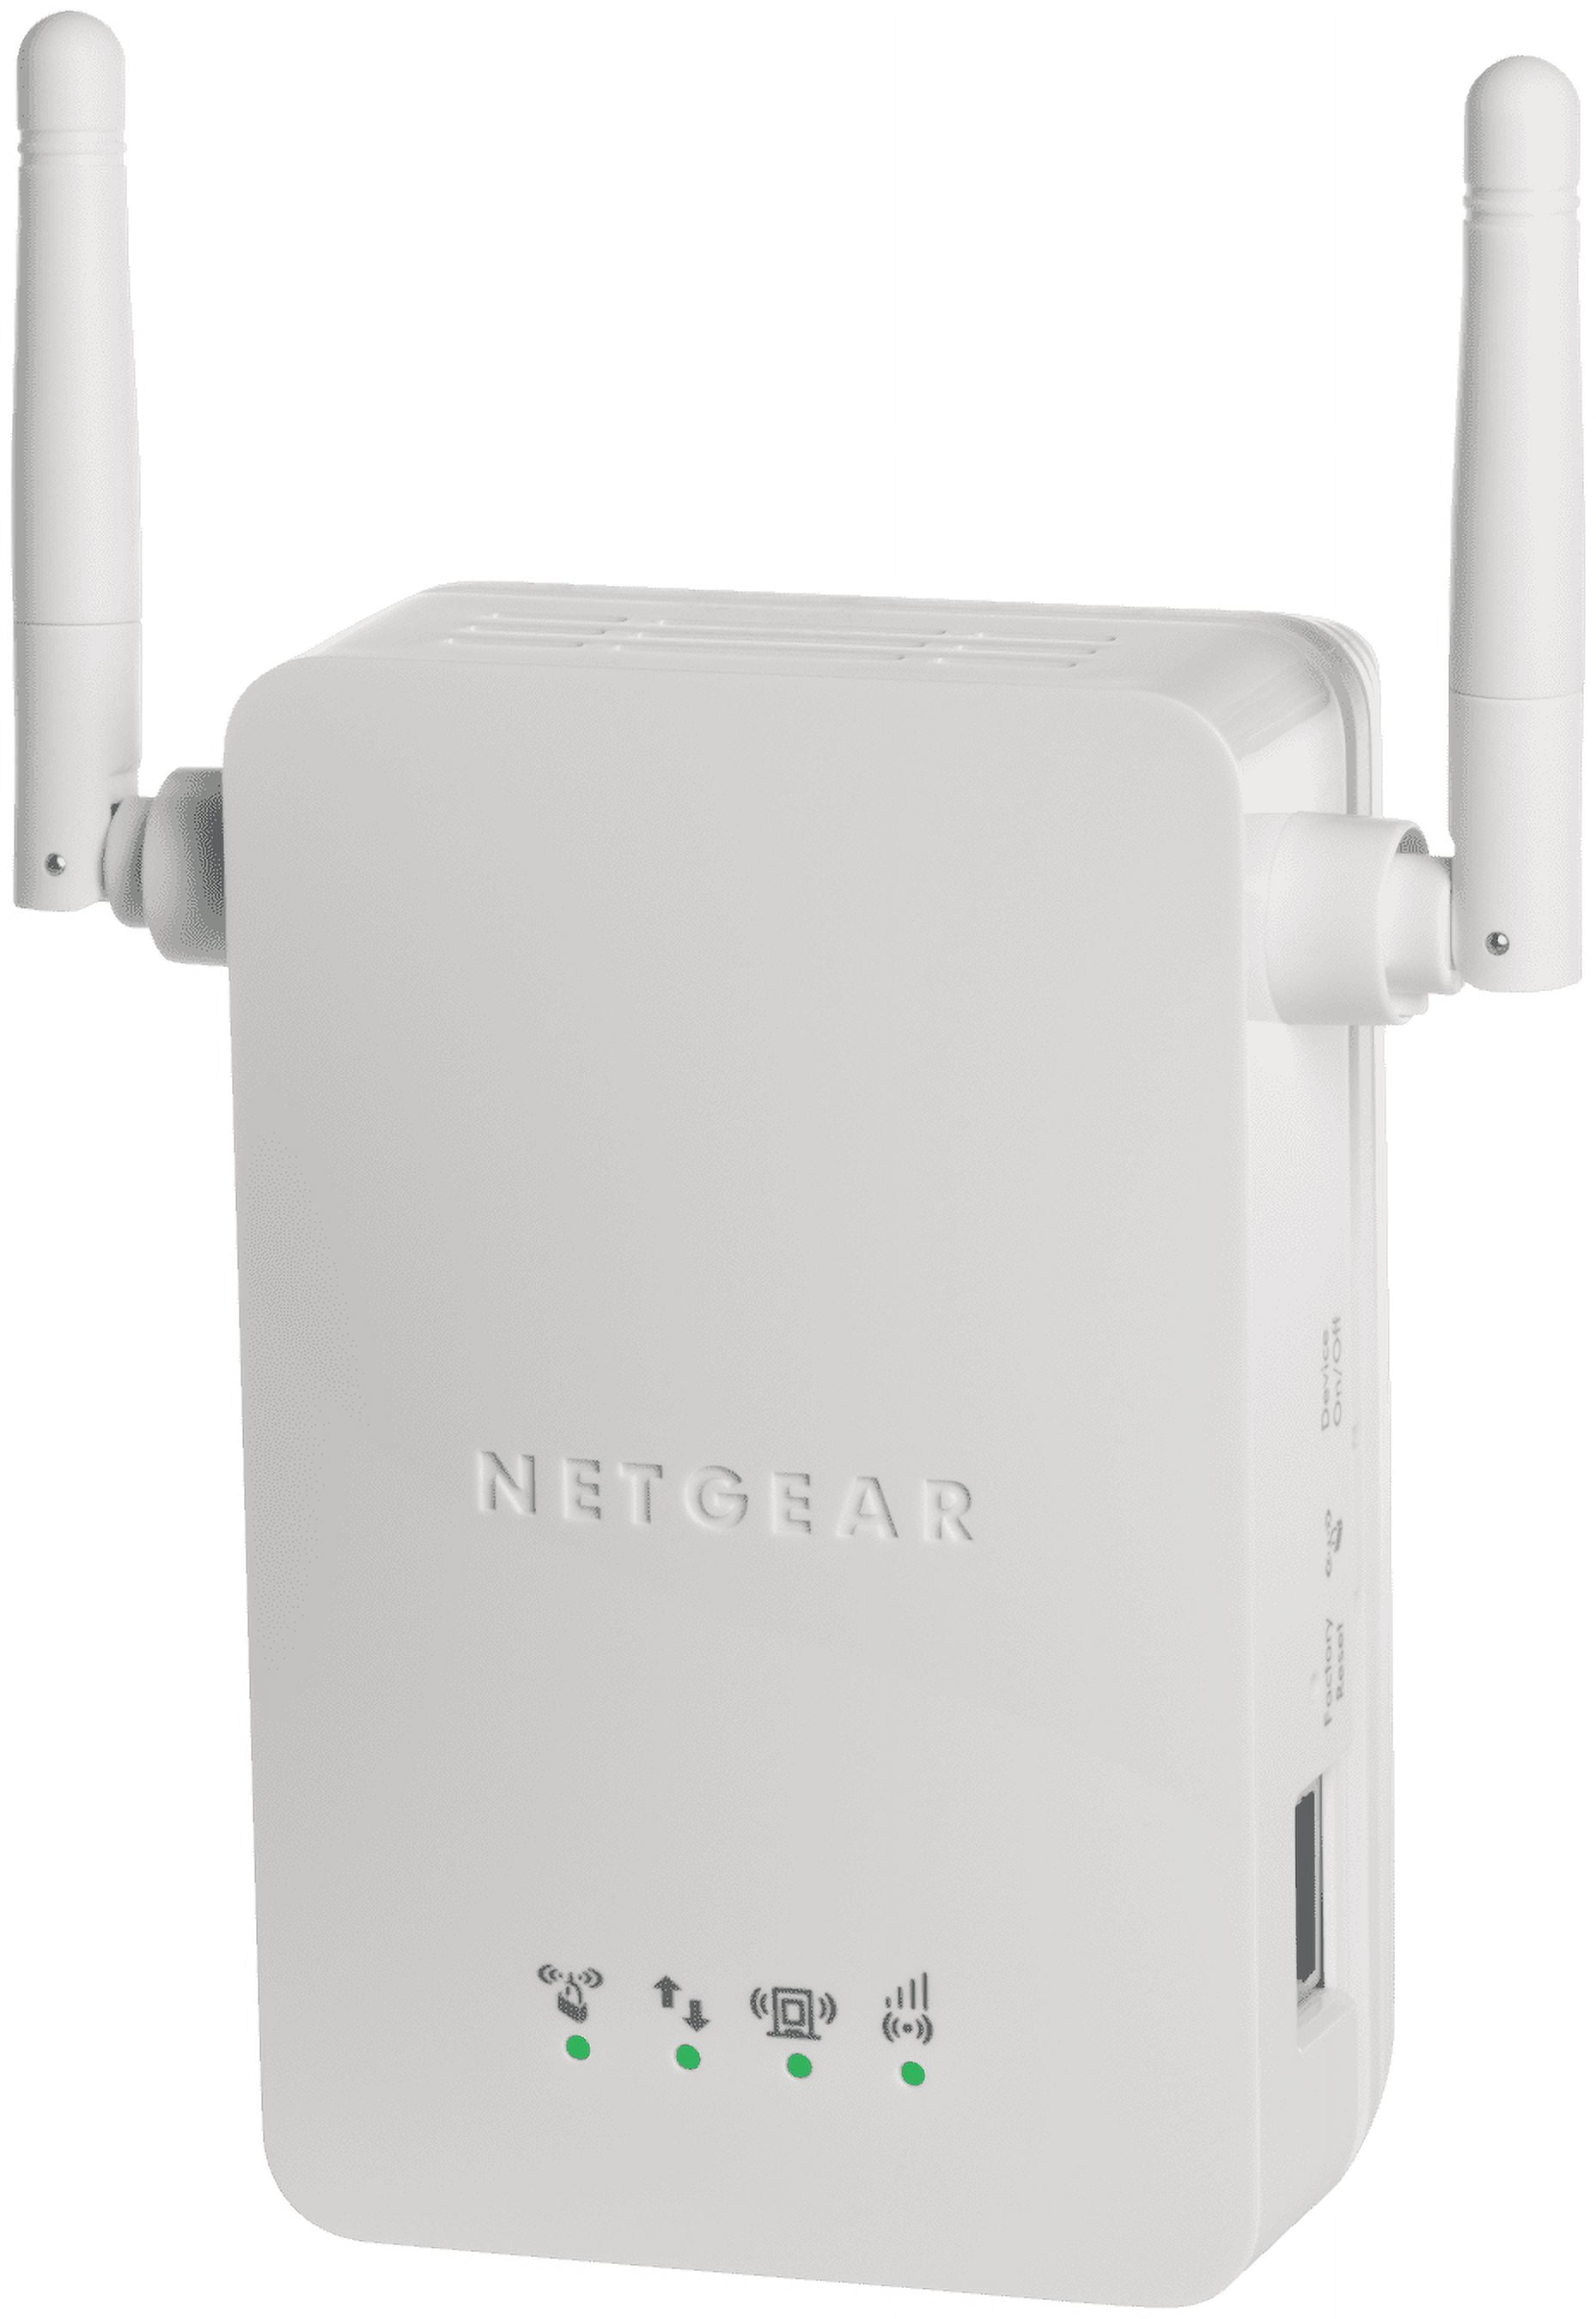 Netgear N300 WiFi Range Extender (WN3000RP-100NAS) 